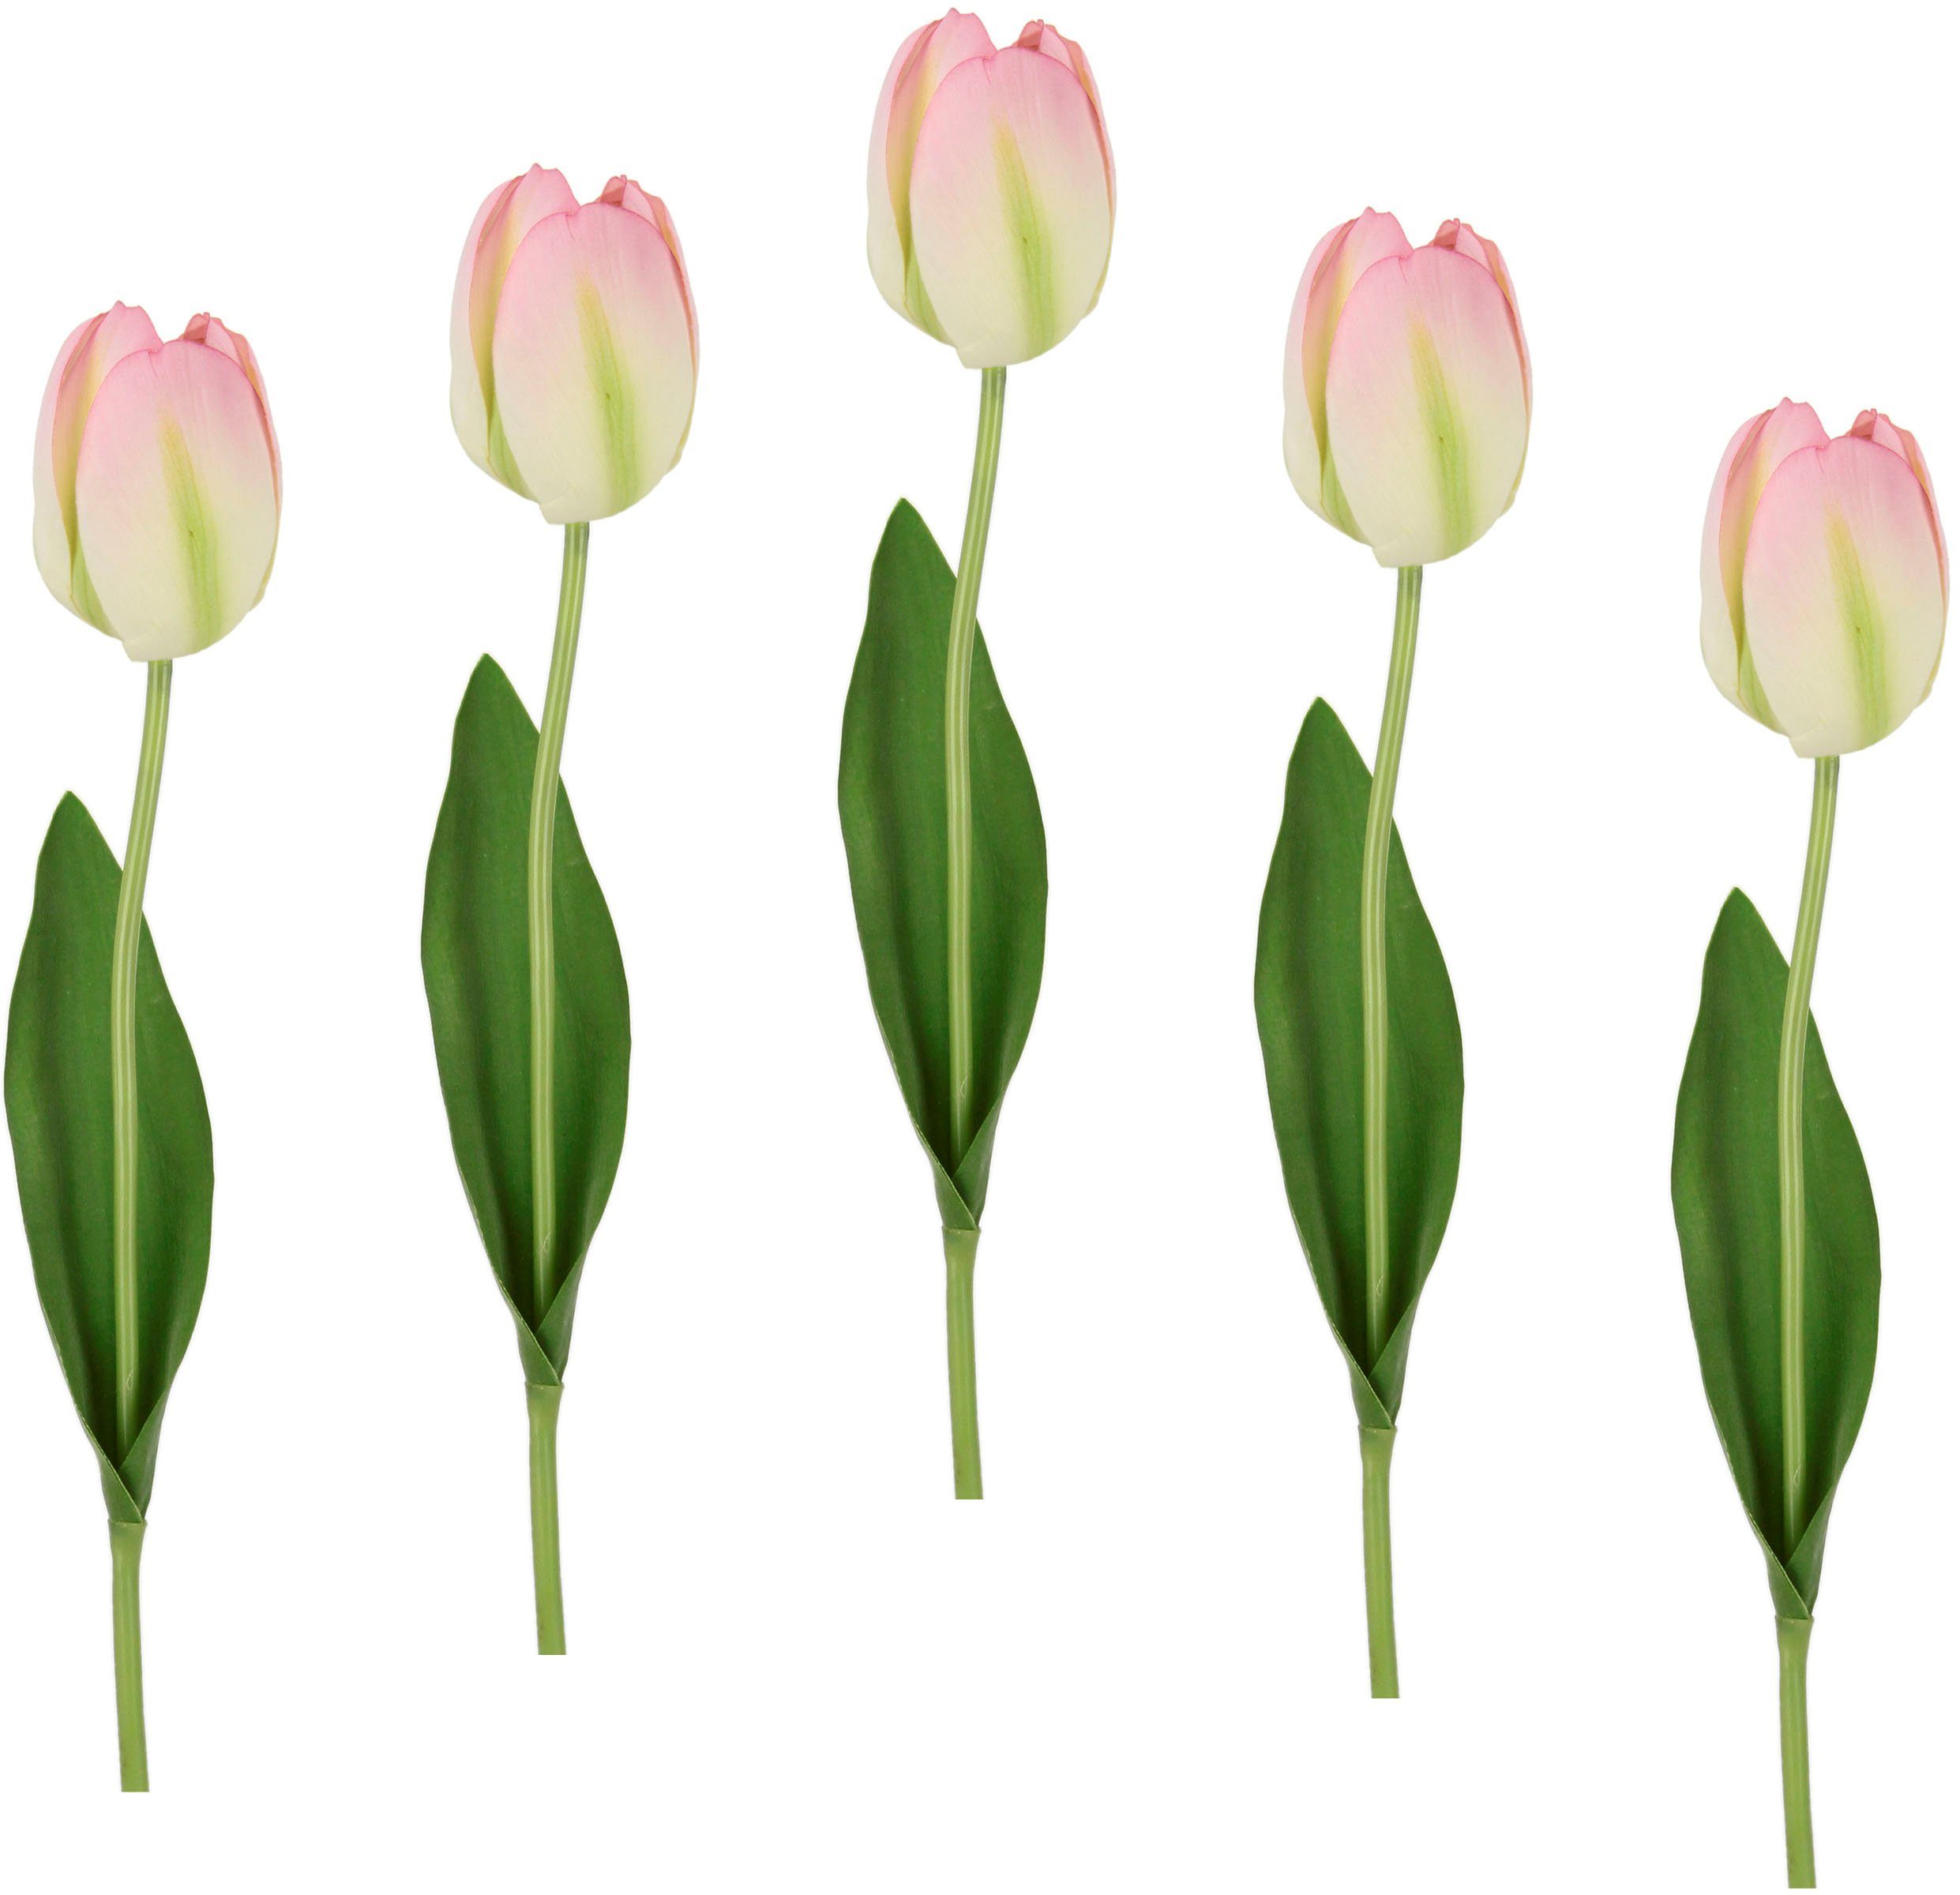 Kunstblume Real Set 67 I.GE.A., Tulpen, Stielblume künstliche Höhe Kunstblumen, Tulpenknospen, weiß/rosa Touch cm, 5er